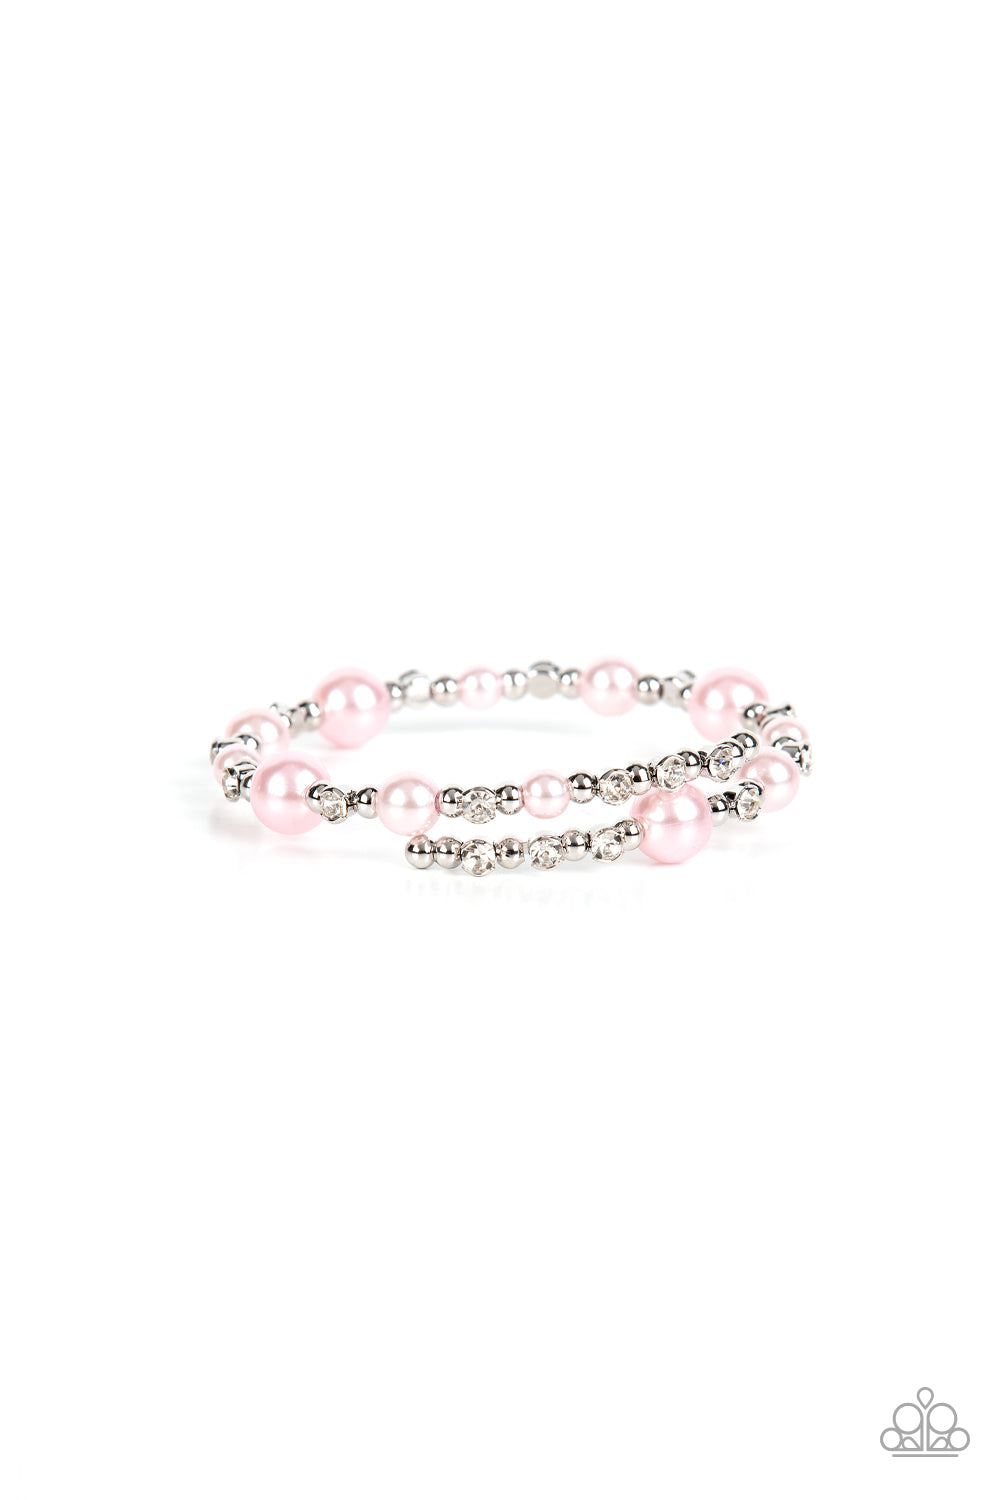 Chicly Celebrity Bracelet__Pink